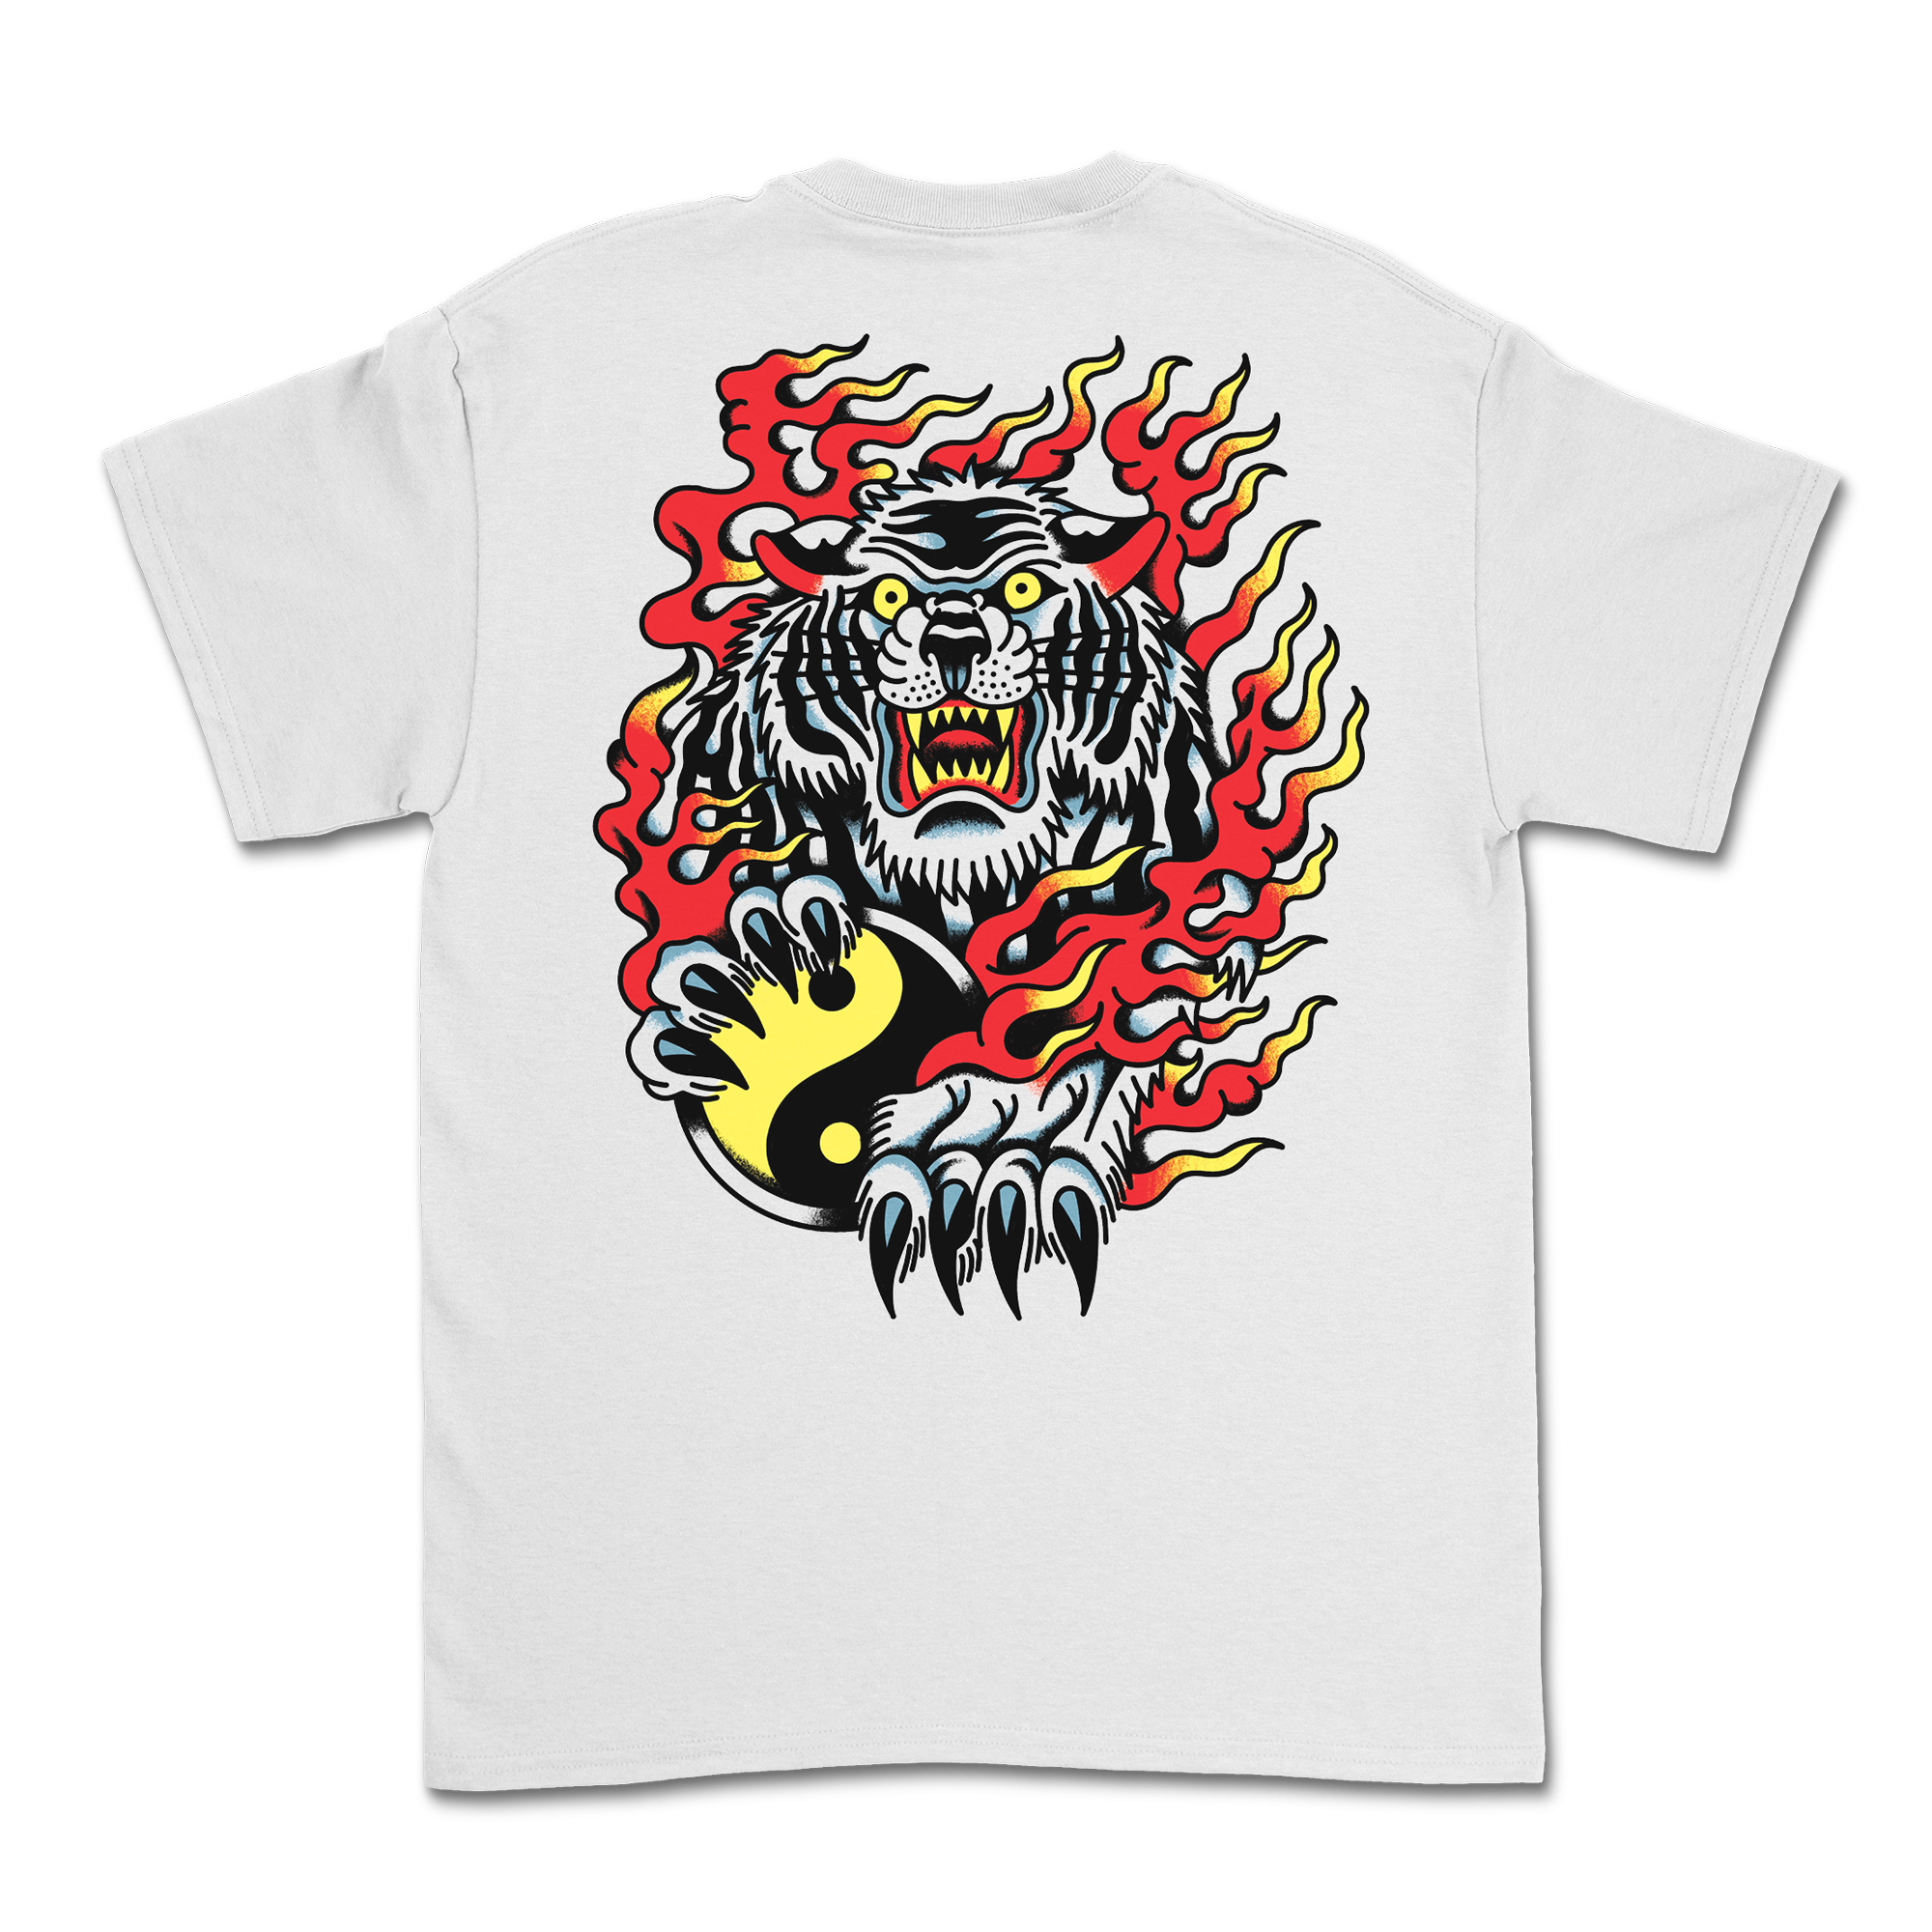 Nick Adam Tattoo - Tiger Shirt